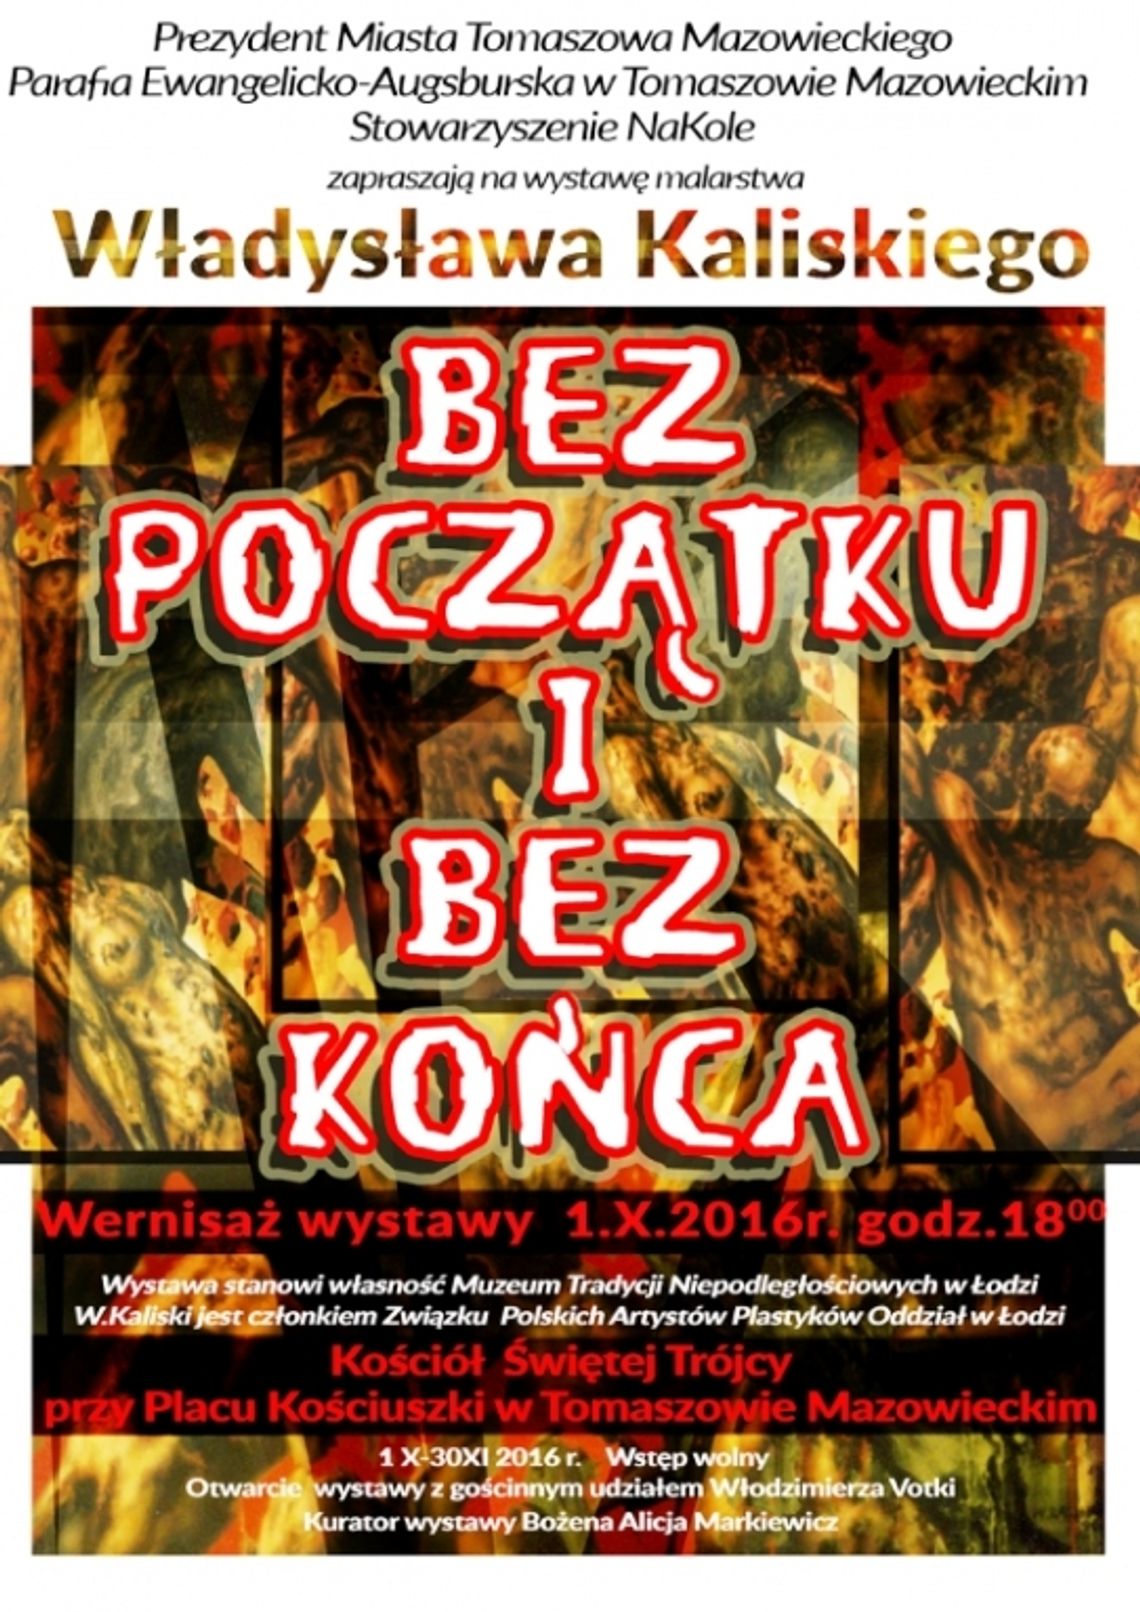 Władysław Kaliski w Kościele Św. Trójcy